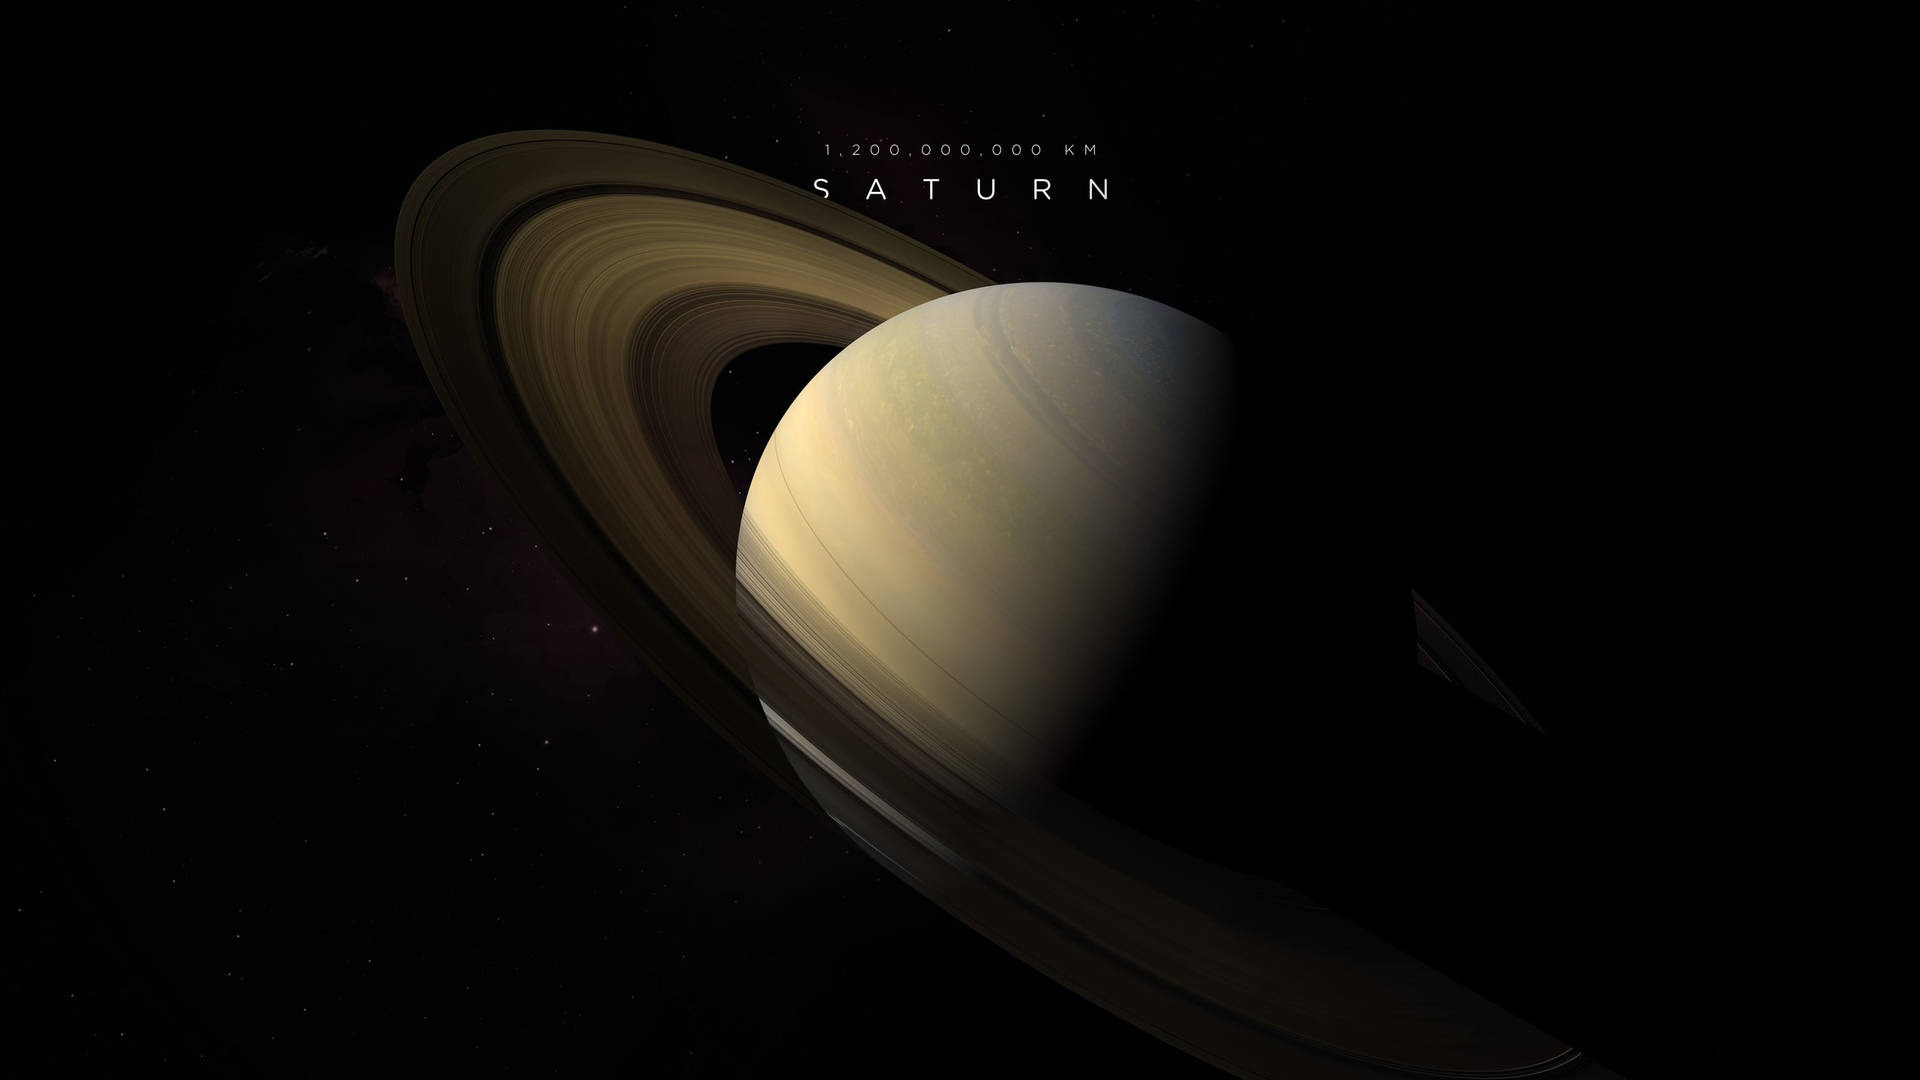 Distant Saturn 4k Background